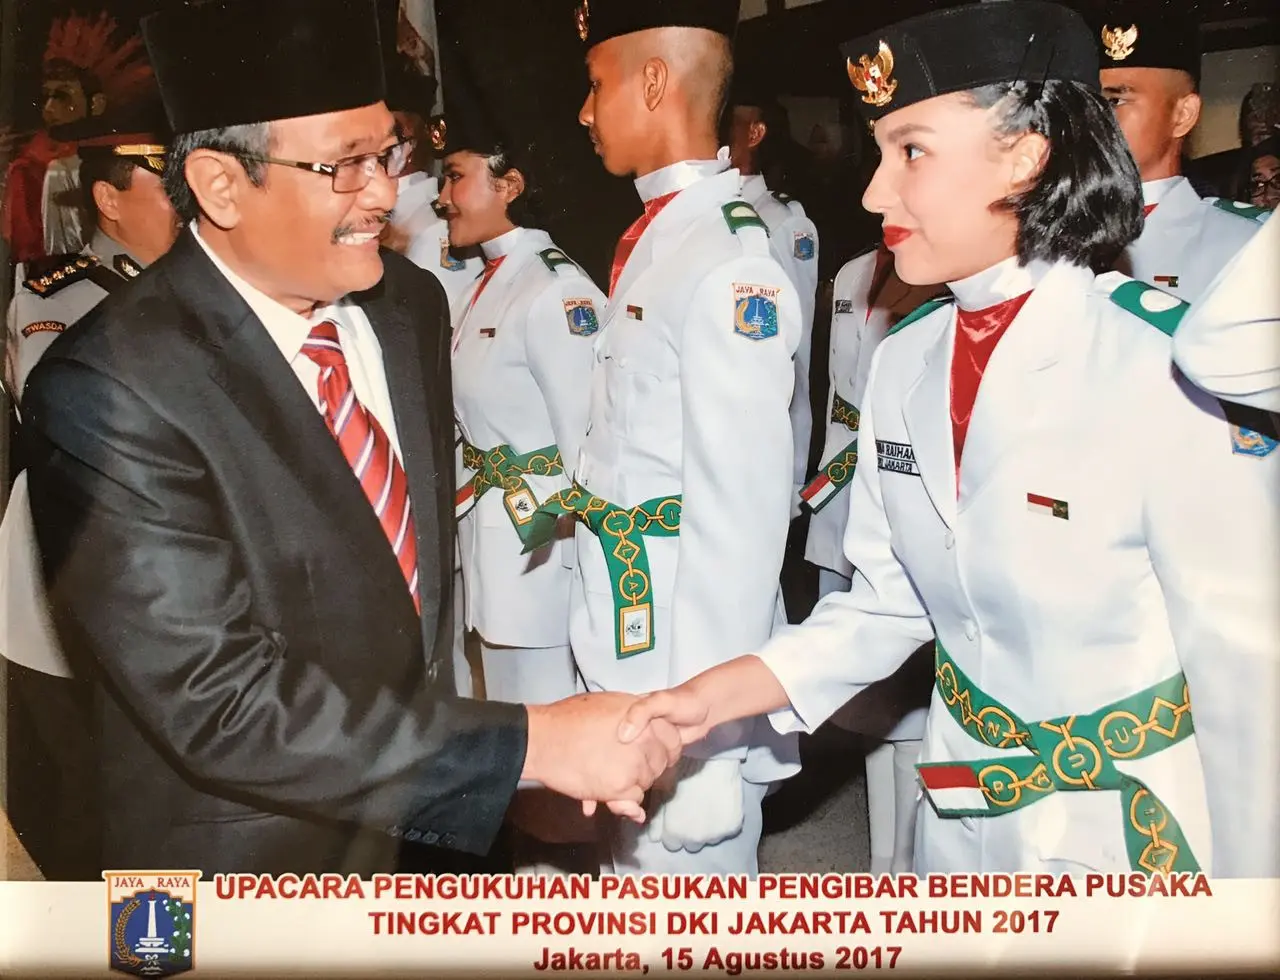 c	Ghina Raihanah Tadjoedin adik Tsania Marwa saat dikukuhkan sebagai Paskibraka Provinsi oleh Gubernur DKI Jakarta. (Dokumentasi Pribadi)